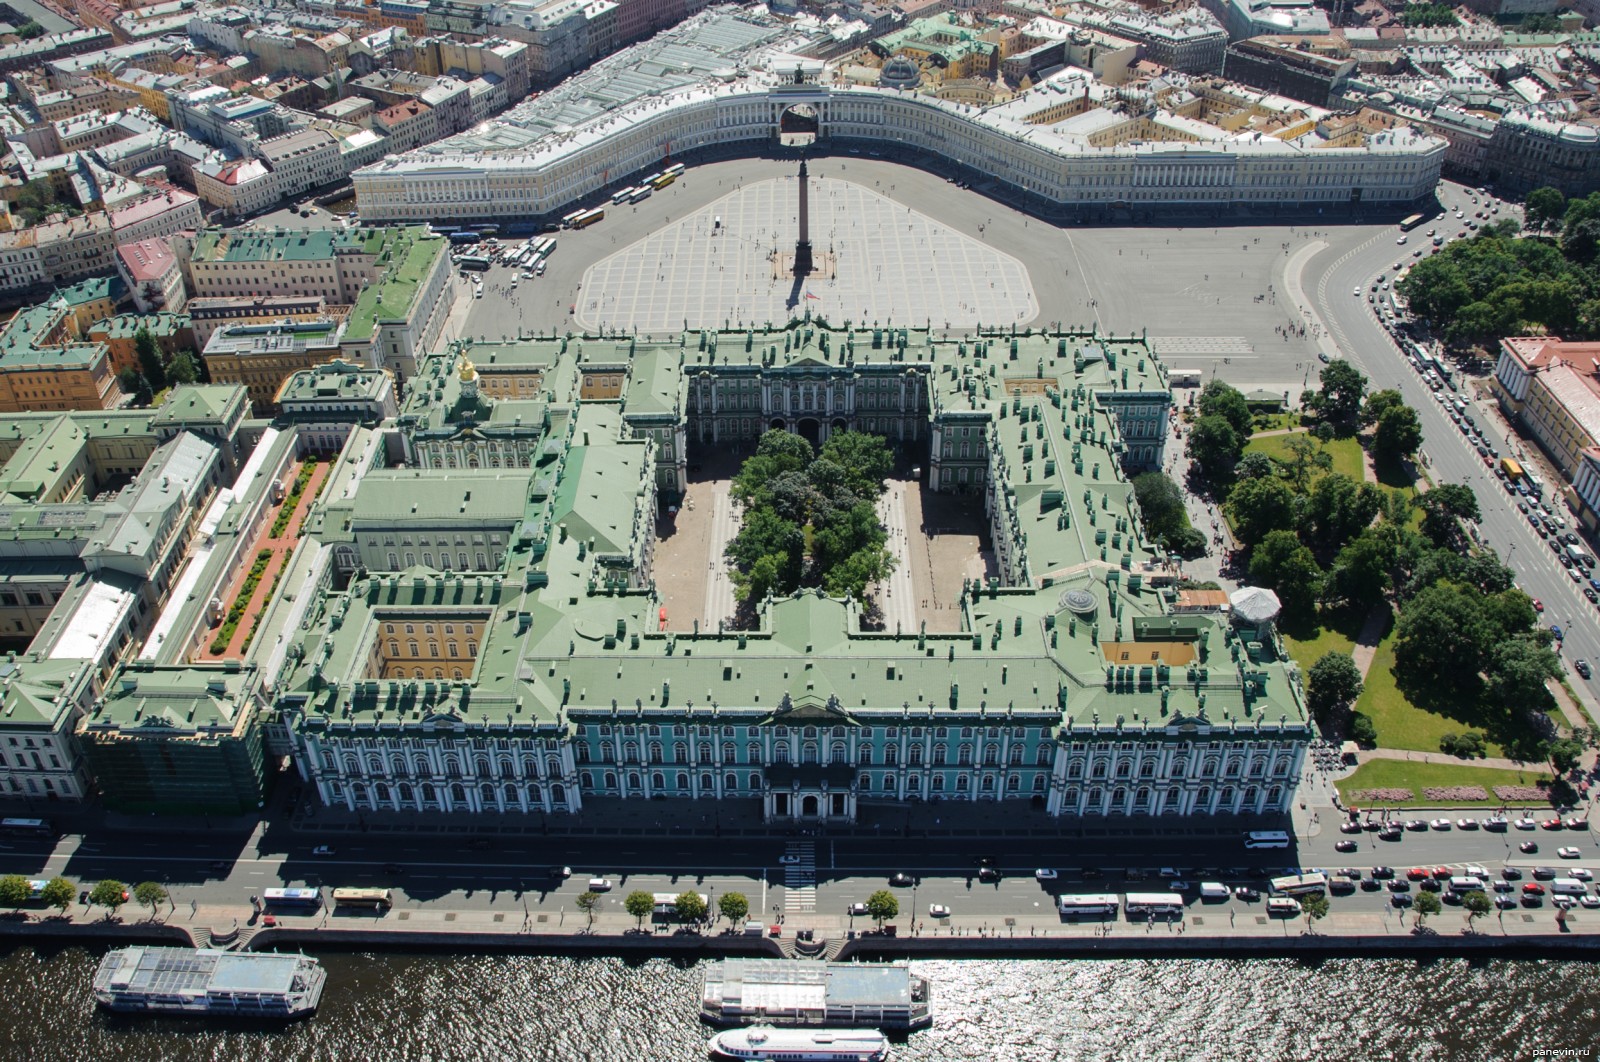 Дворцовая площадь в Санкт-Петербурге Эрмитаж